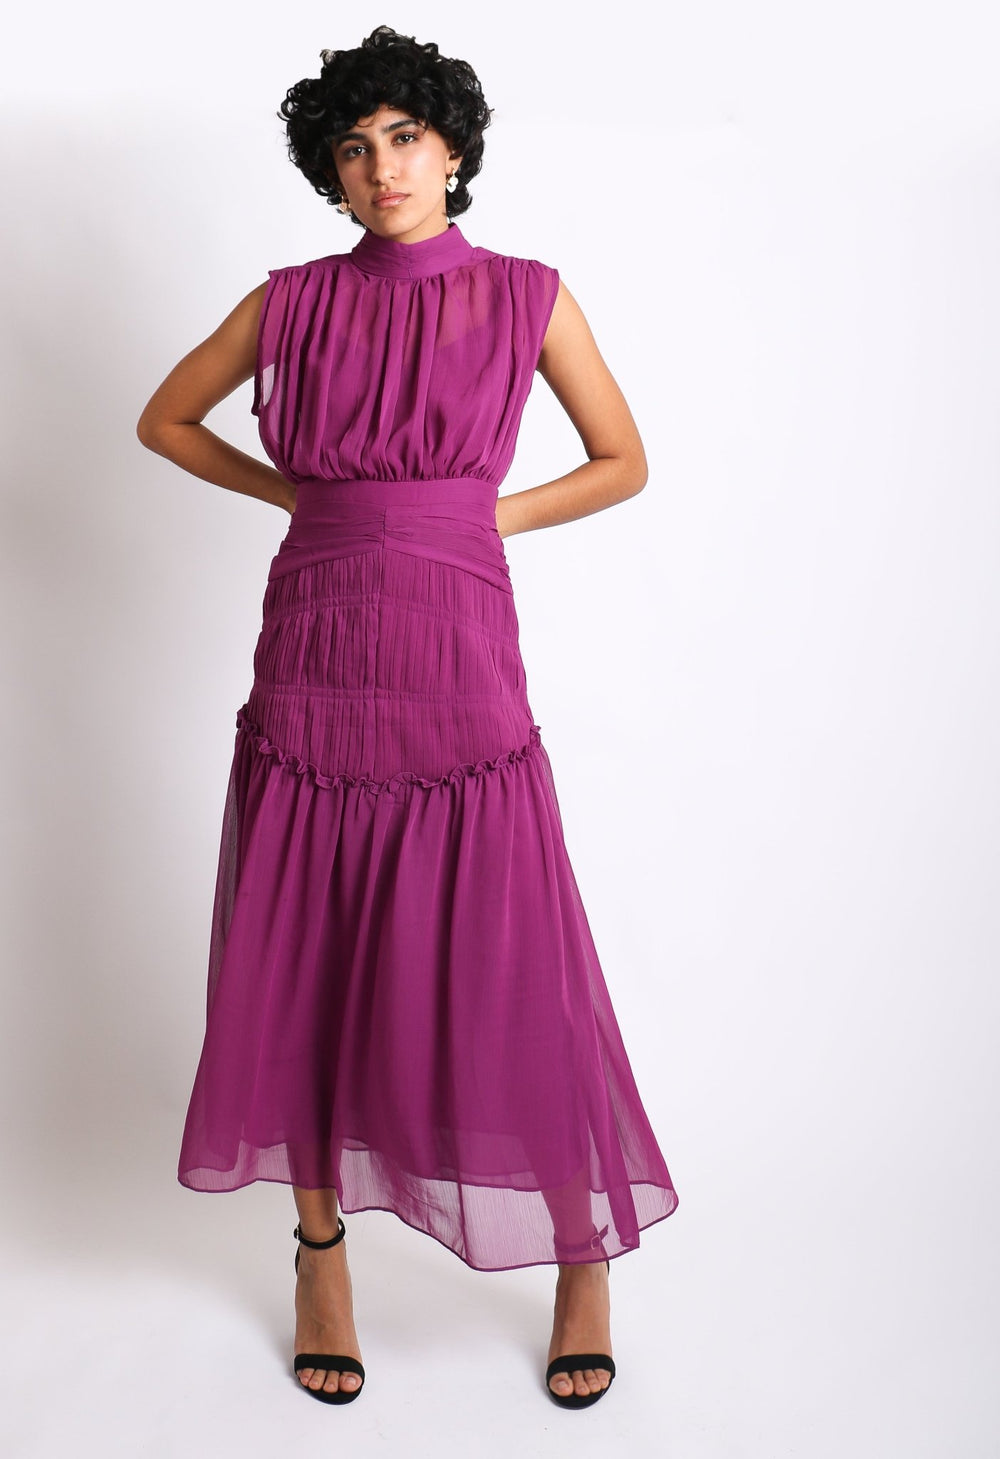 Elvira - morado - Lend the Trend renta de vestidos mexico